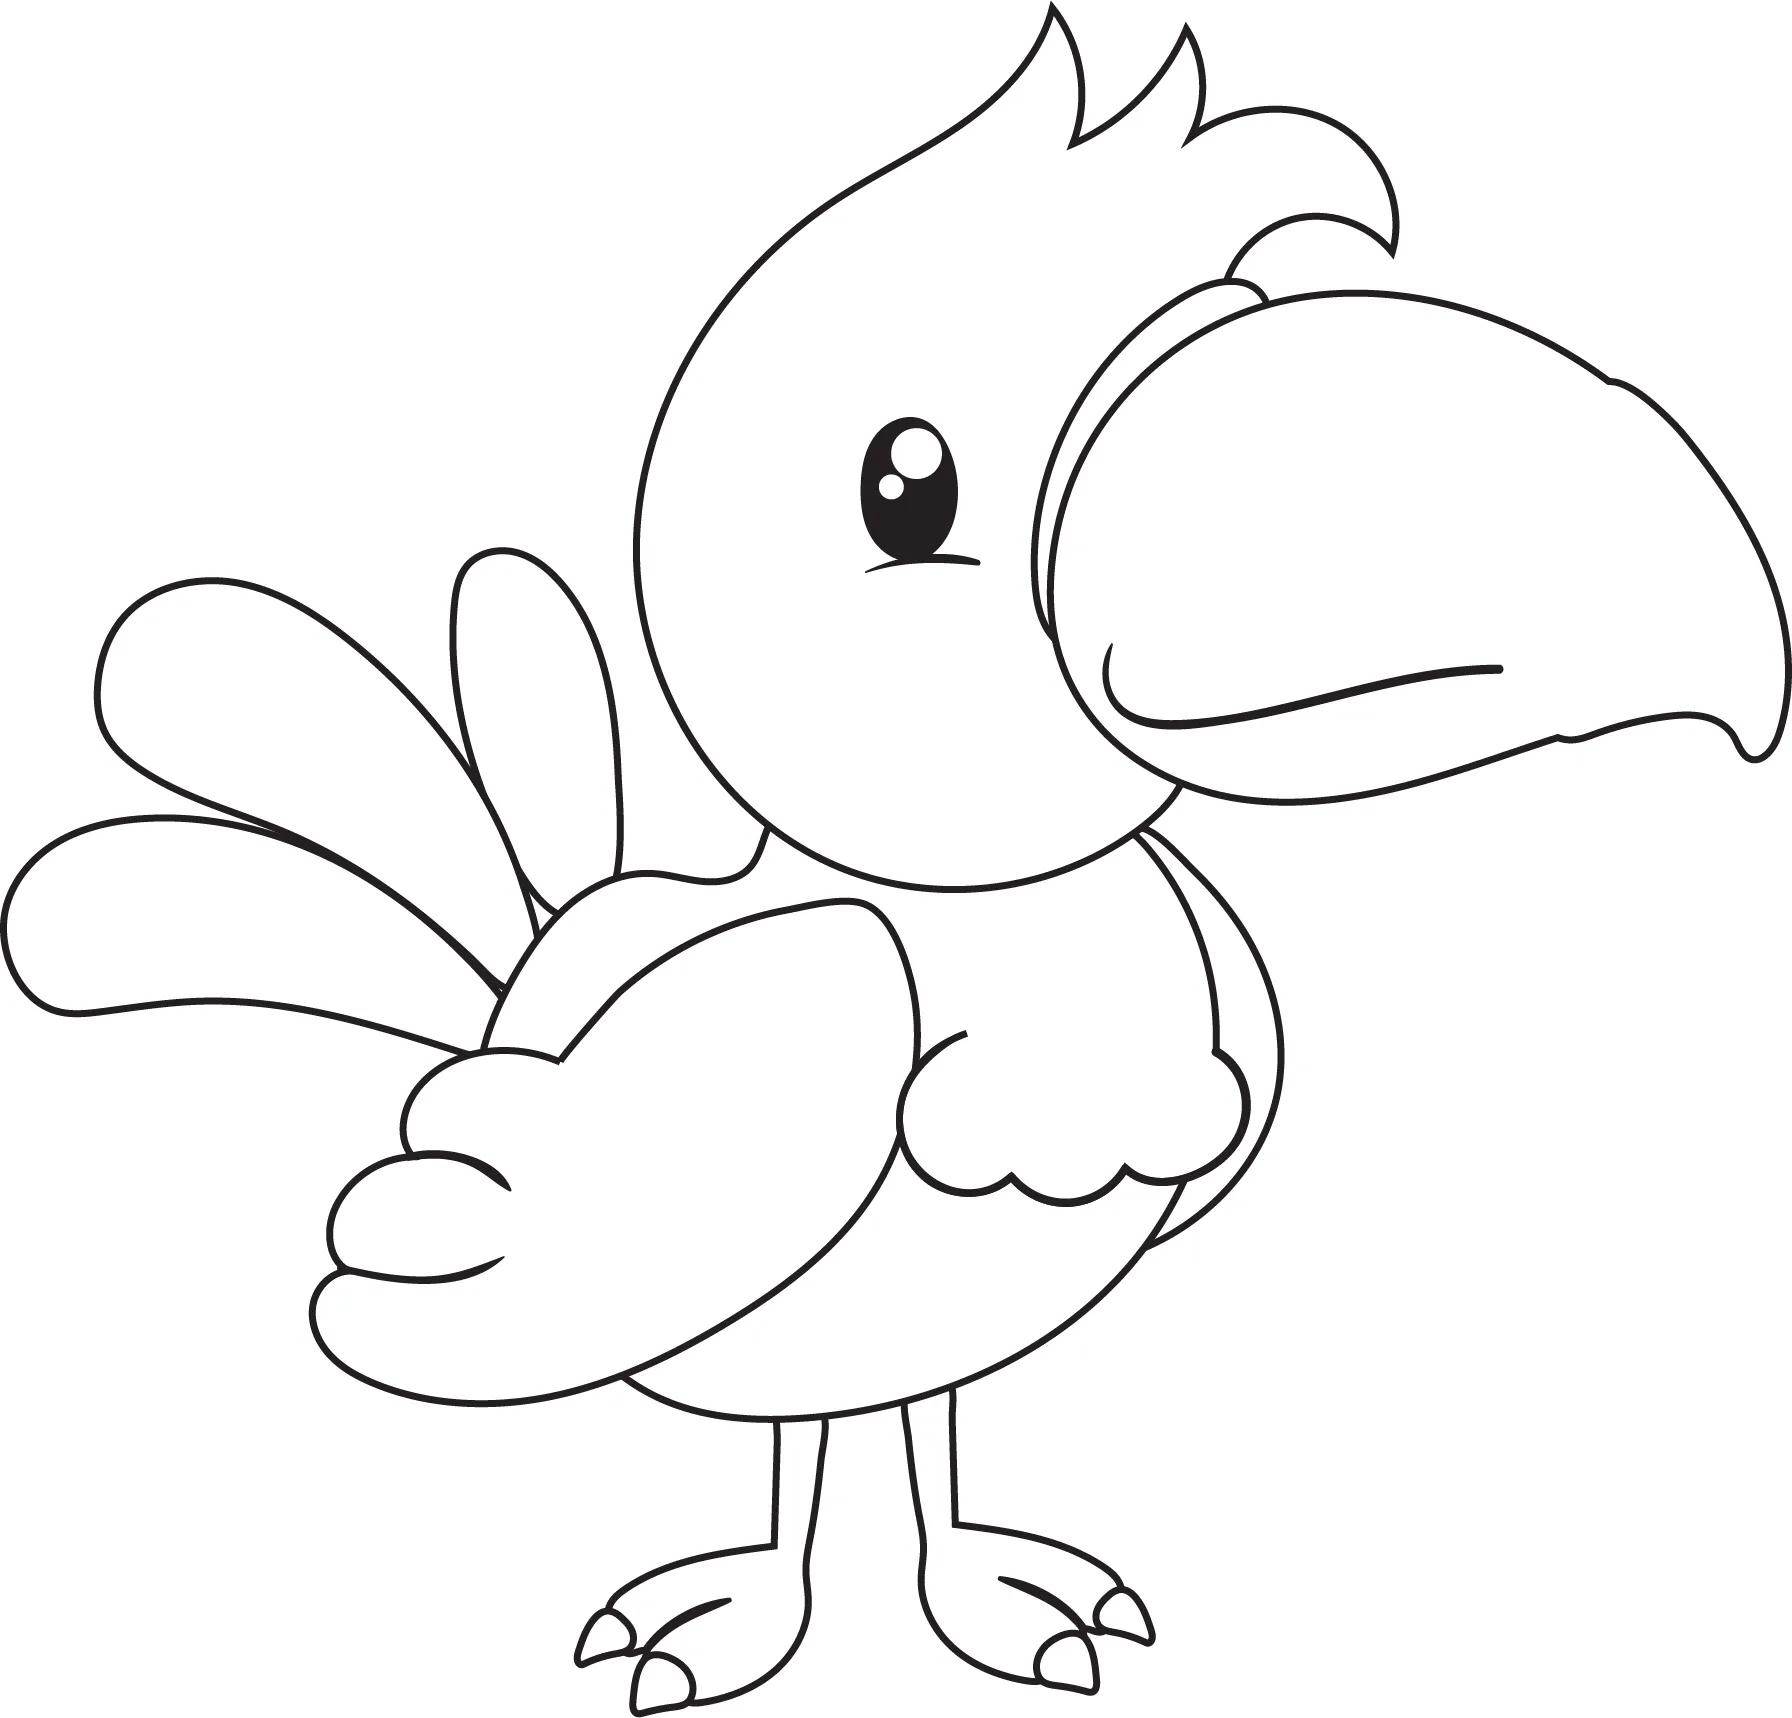 鹦鹉的简笔画图片大全(13),简笔画鹦鹉,动物简笔画_小鸭子儿童乐园